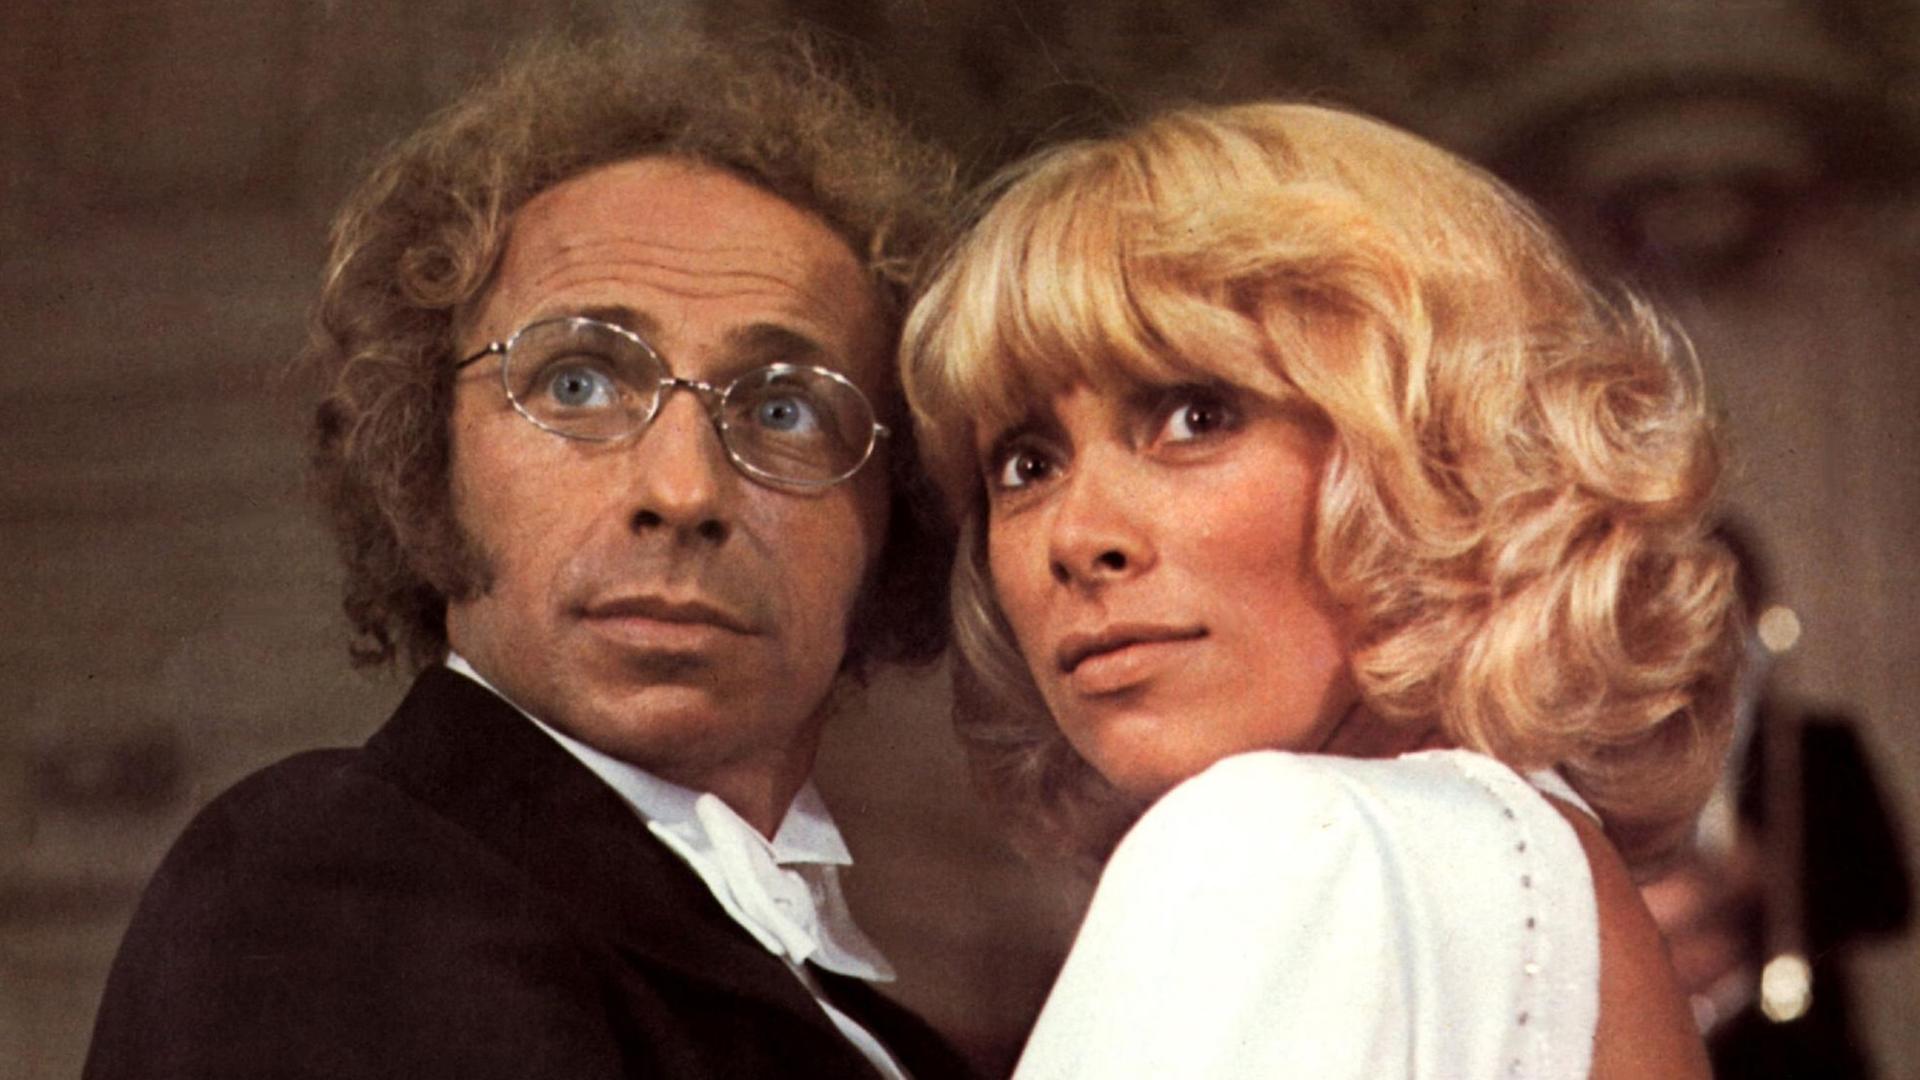 Schauspieler Pierre Richard und Schauspielerin Mireille Darc 1974 in dem Film "Der große Blonde kehrt zurück".